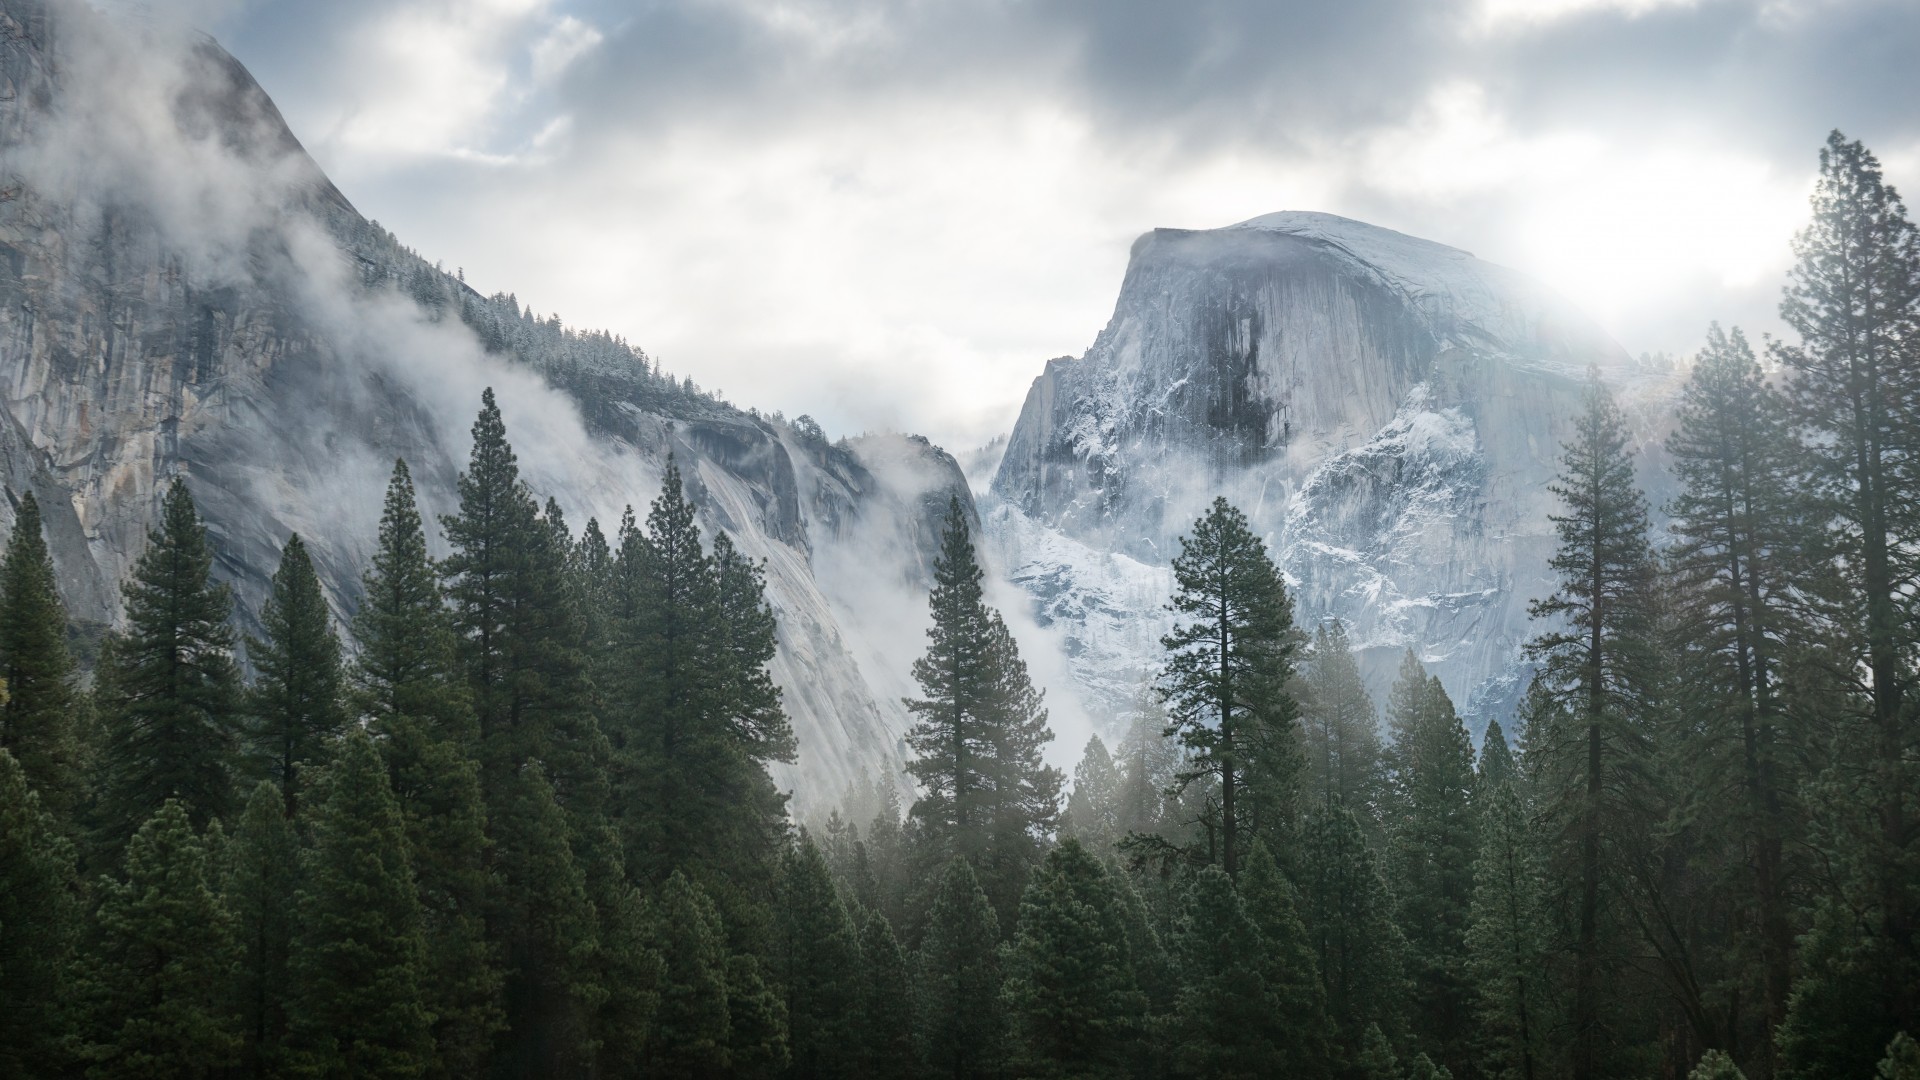 Обои Обои Эпл, 5k, 4k, 8k, лес, горы, снег, Yosemite, 5k 